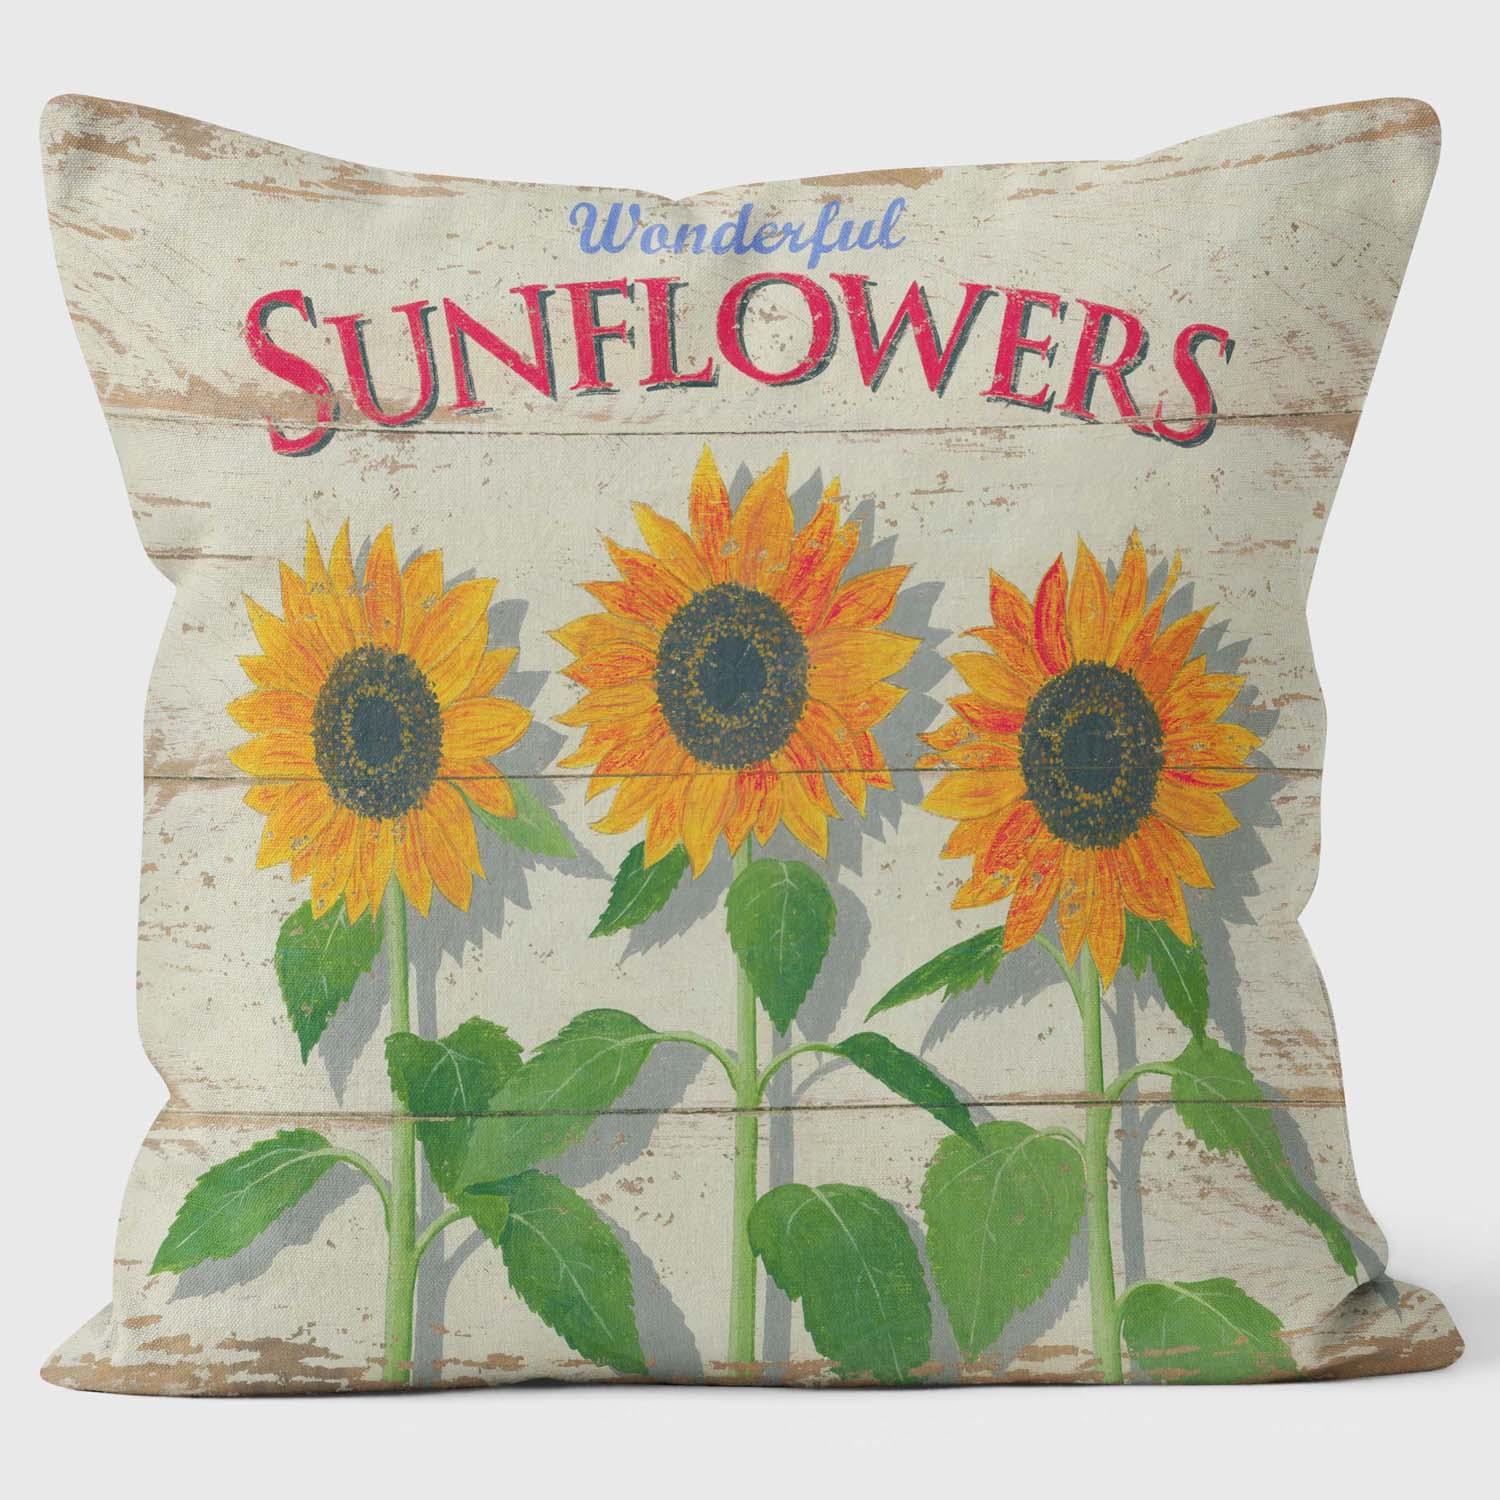 Sunflowers - Martin Wiscombe - Art Cushions - Handmade Cushions UK - WeLoveCushions